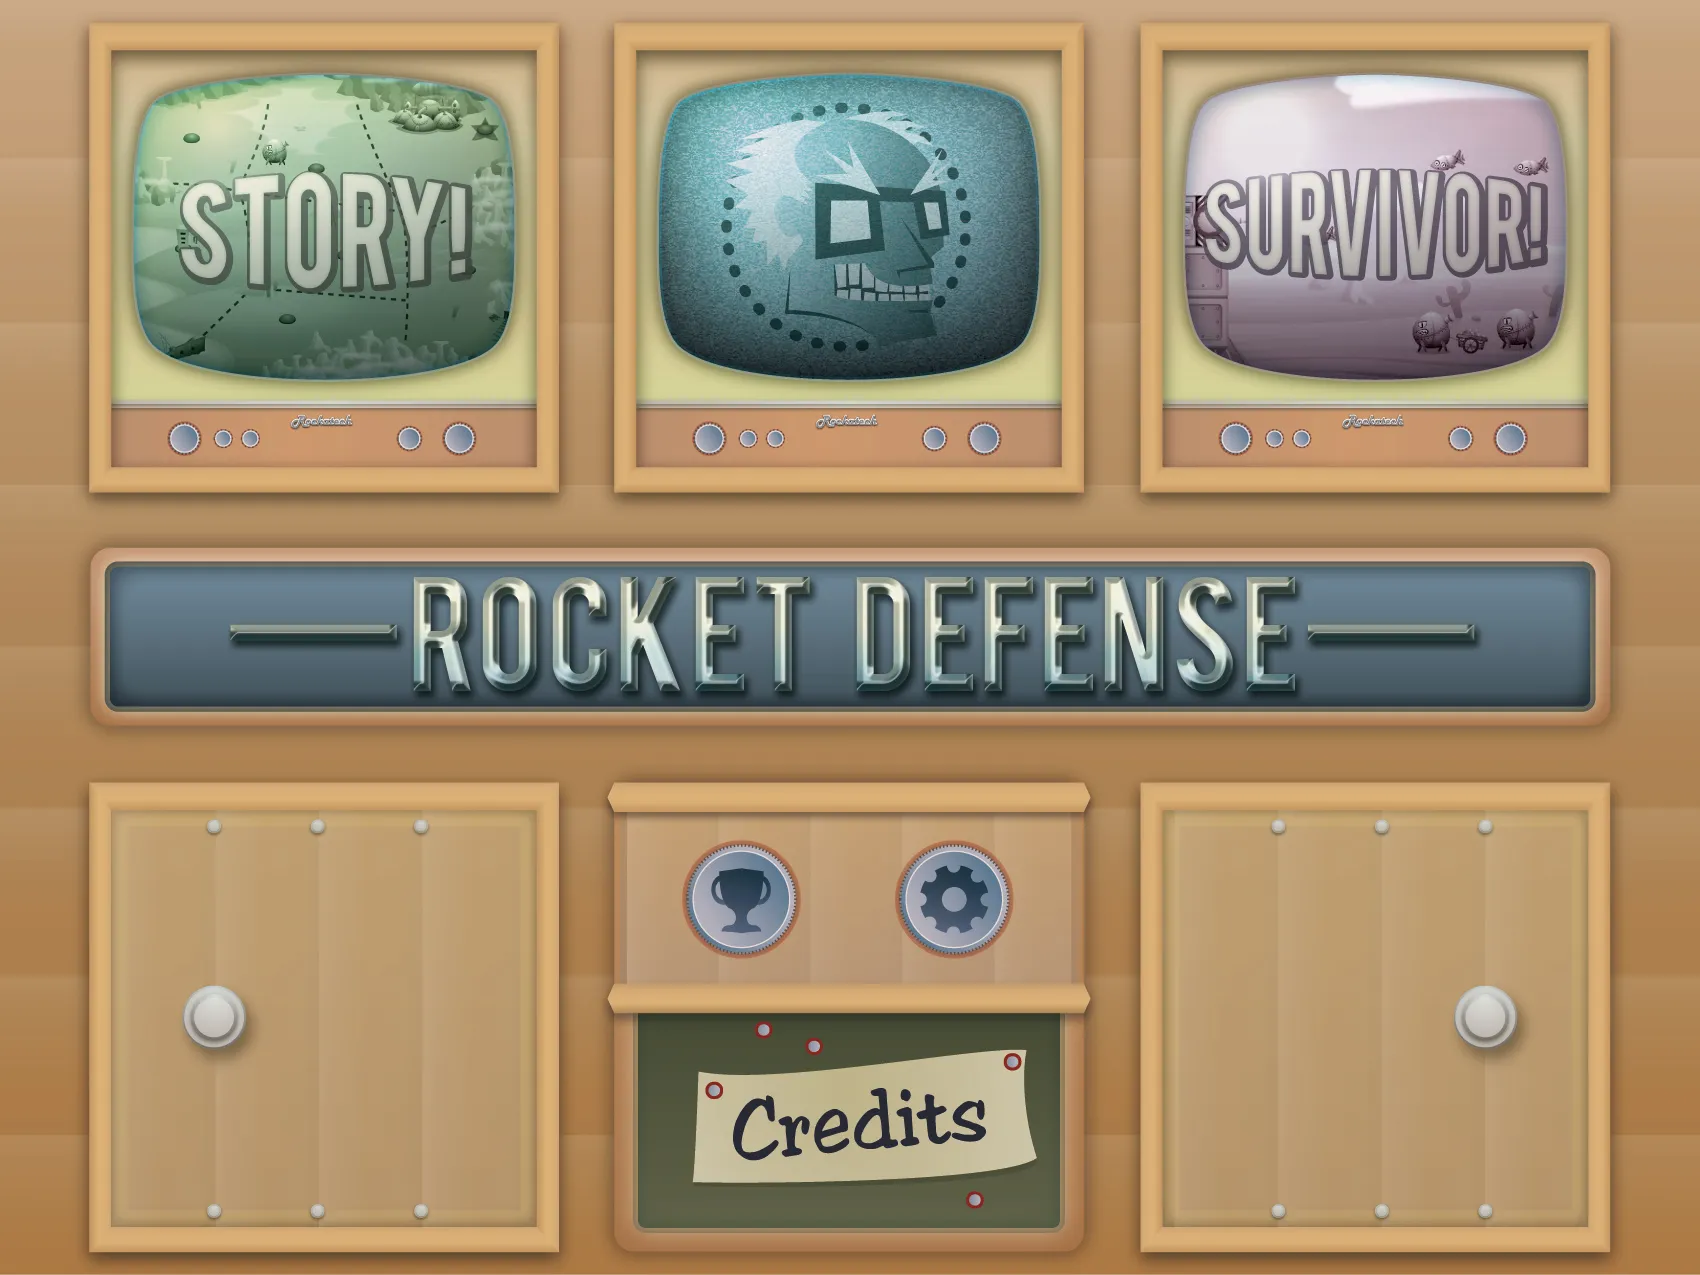 Main Menu screen for Rocket Defense